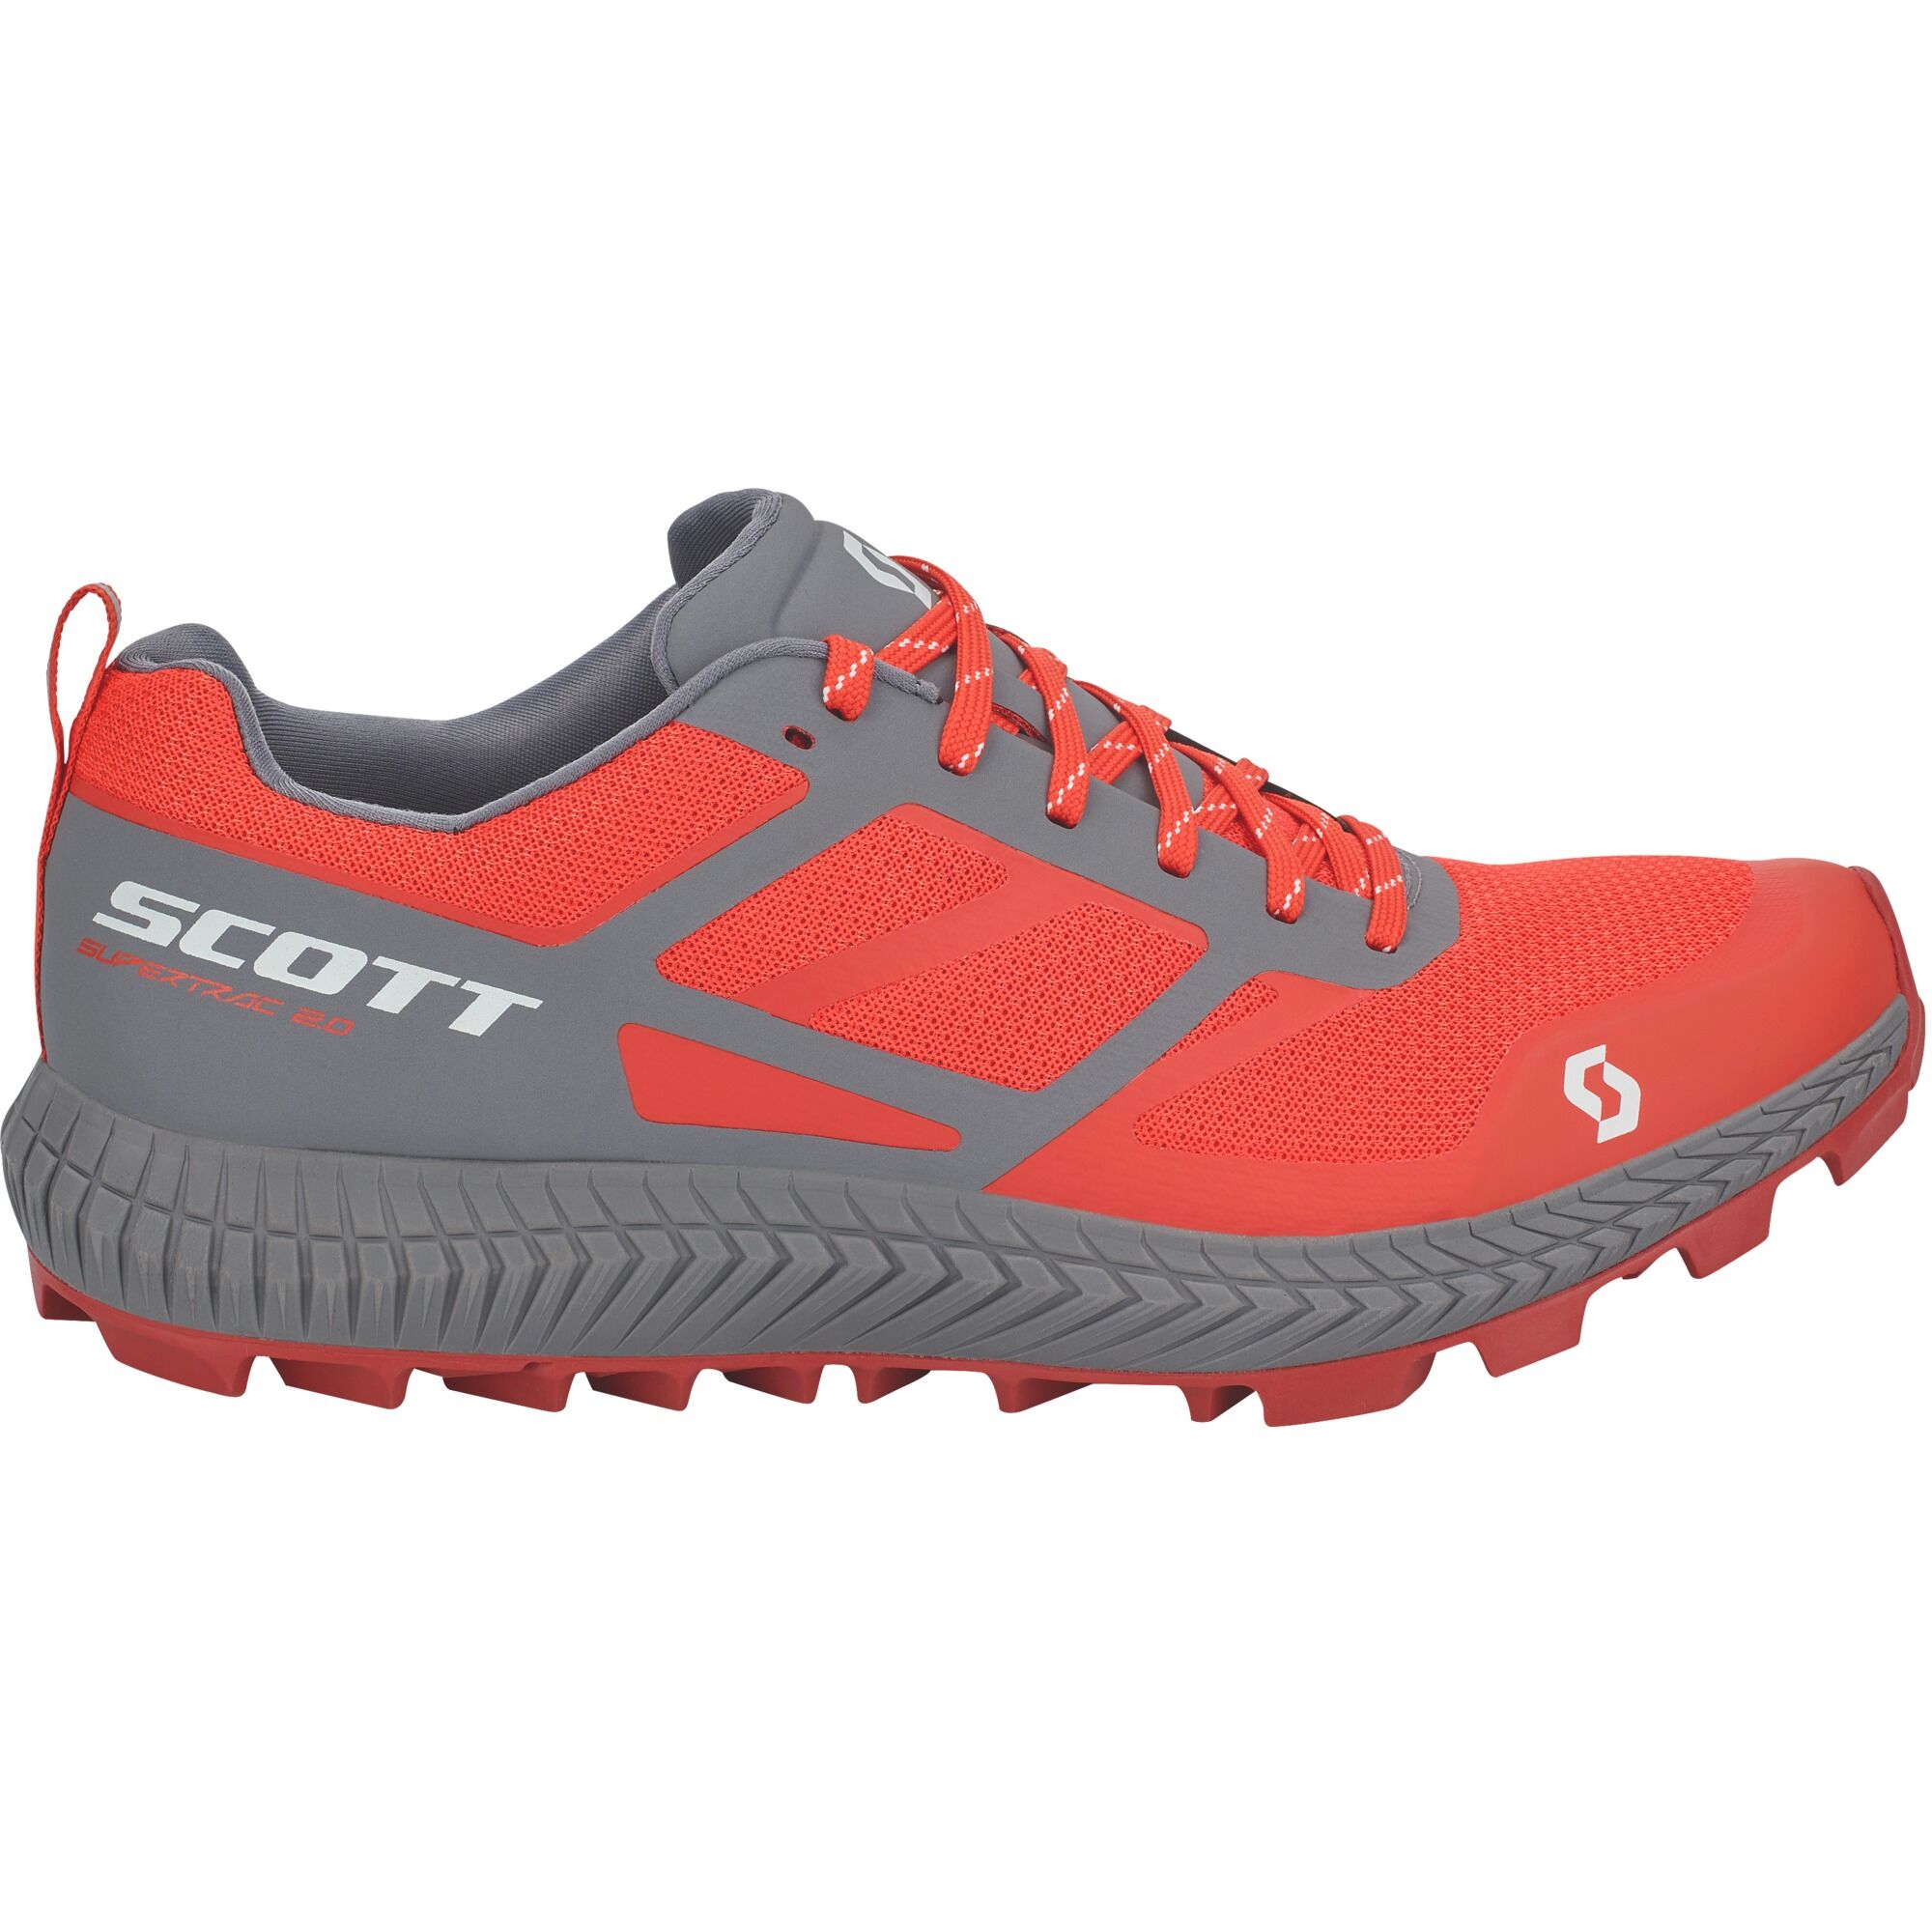 Scott Supertrac 2.0 - Scarpe da trail running - Uomo